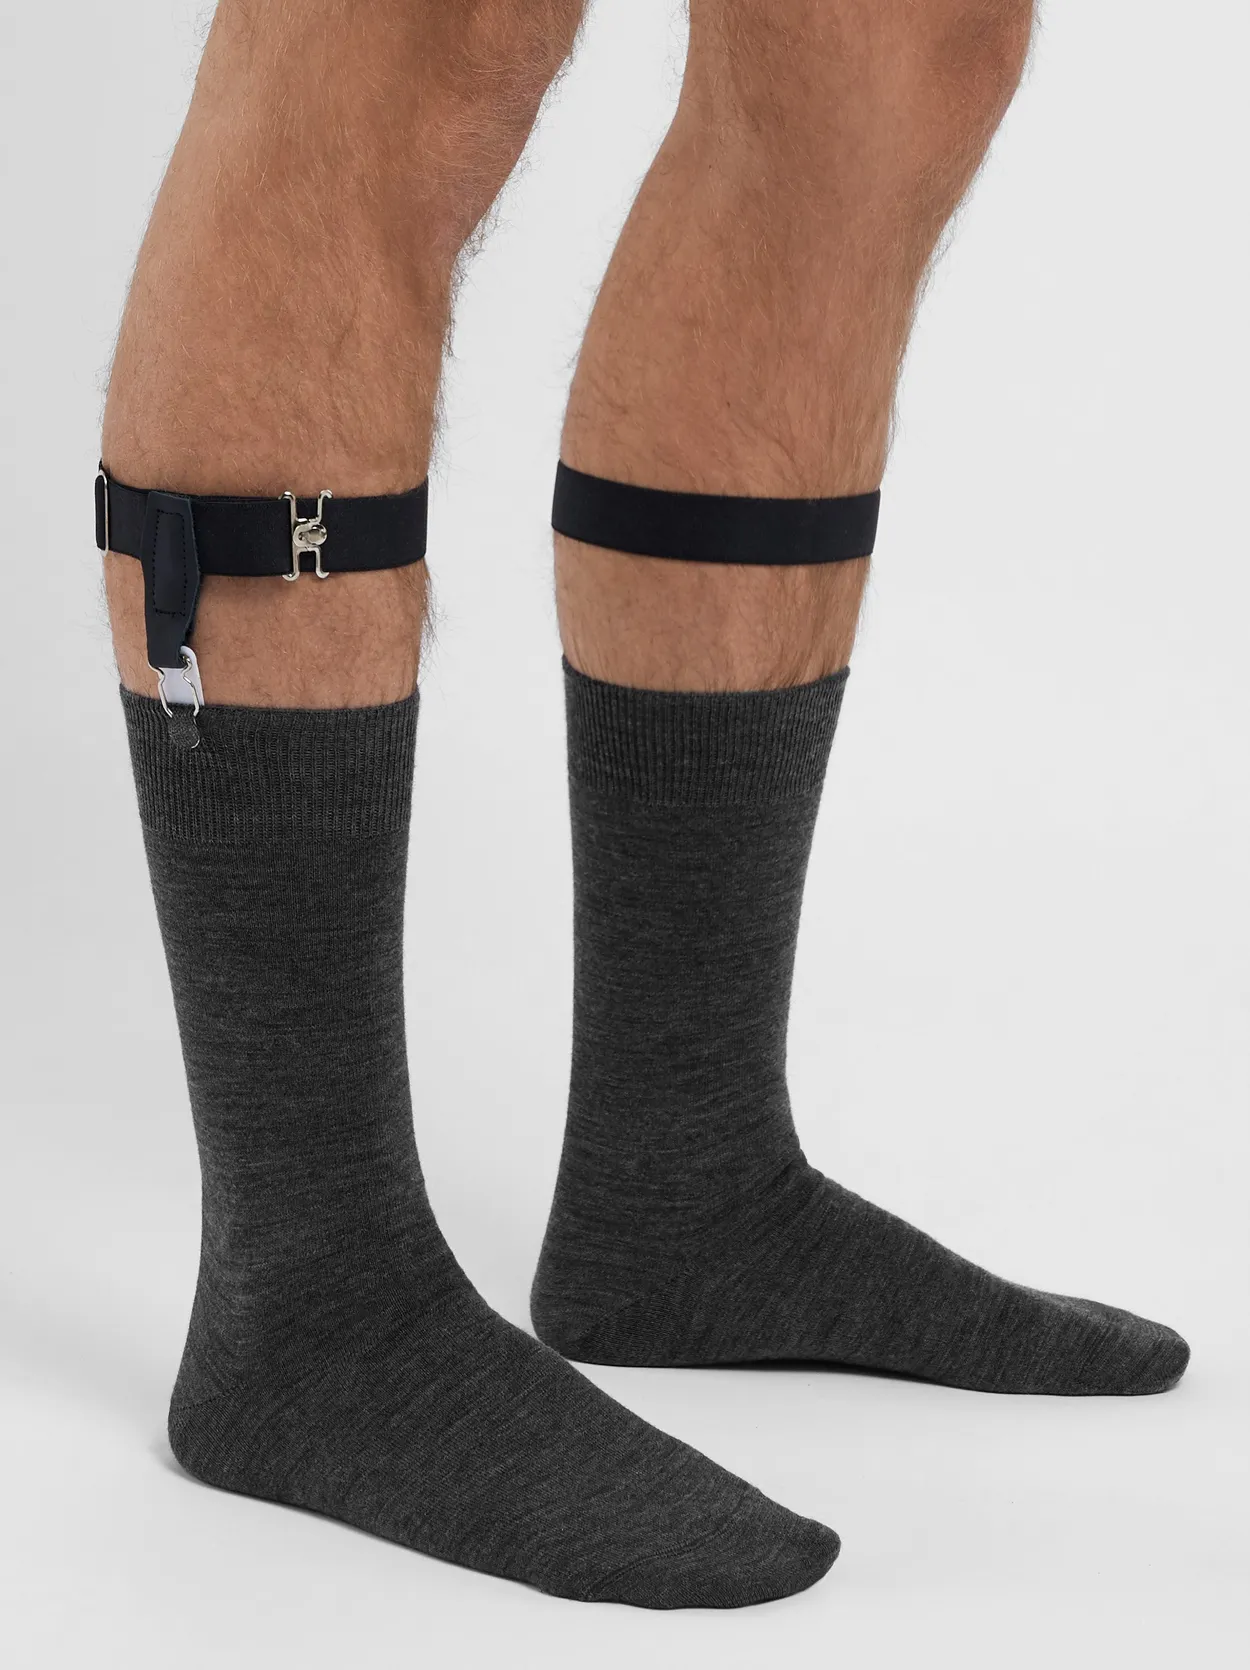 Black Sock Garters